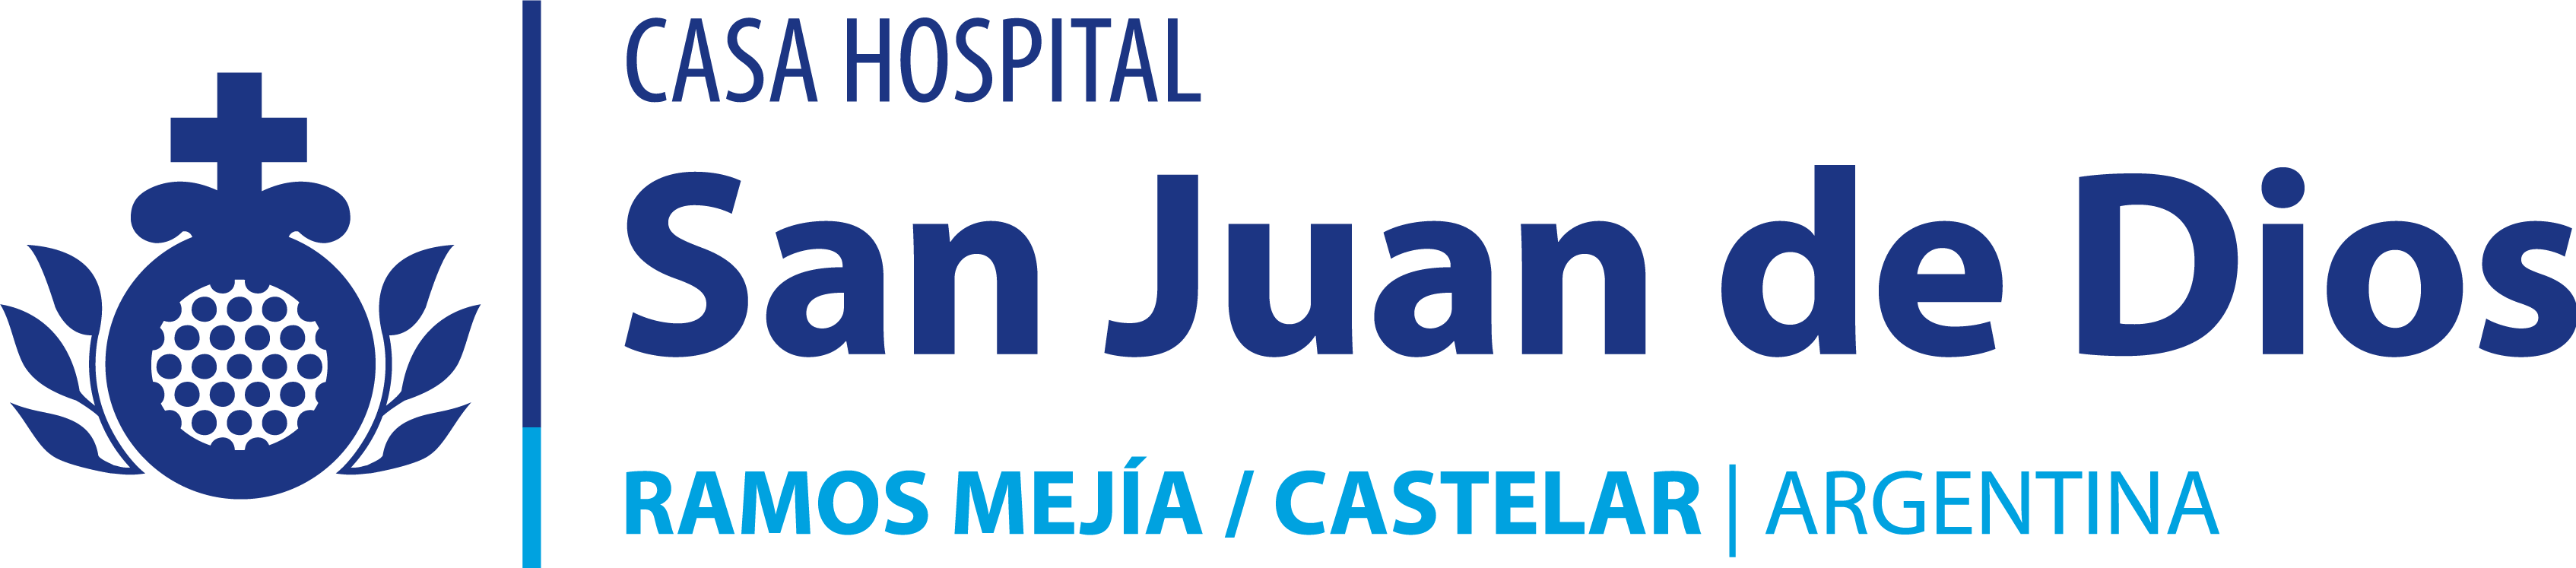 CASA HOSPITAL SAN JUAN DE DIOS